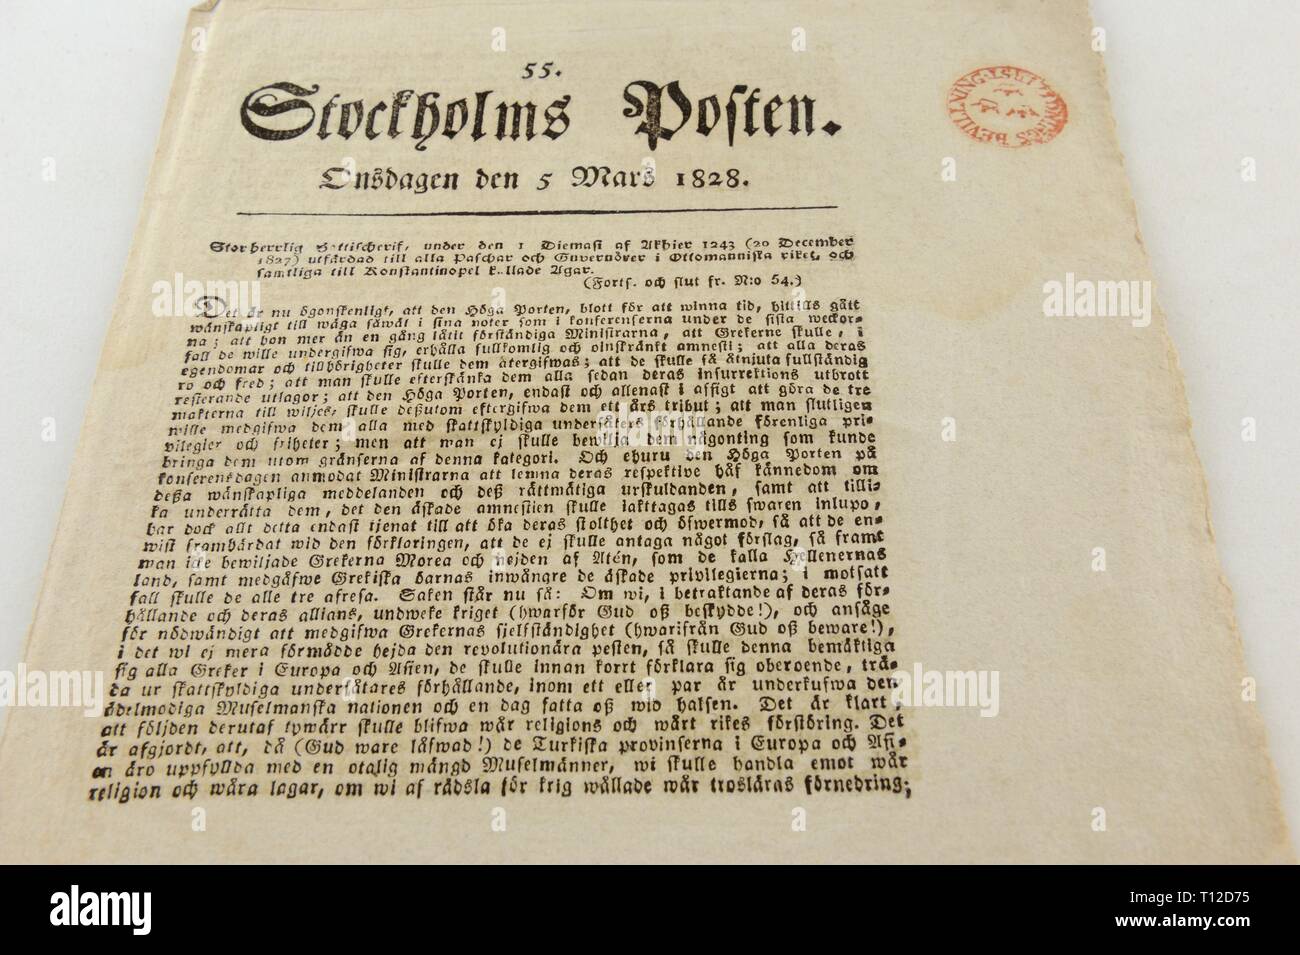 Estocolmo Posten fue un periódico sueco publicó en 1778 -1833. Se convirtió en el principal diario de Suecia. En este período de tiempo cuando los papeles raramente h Foto de stock